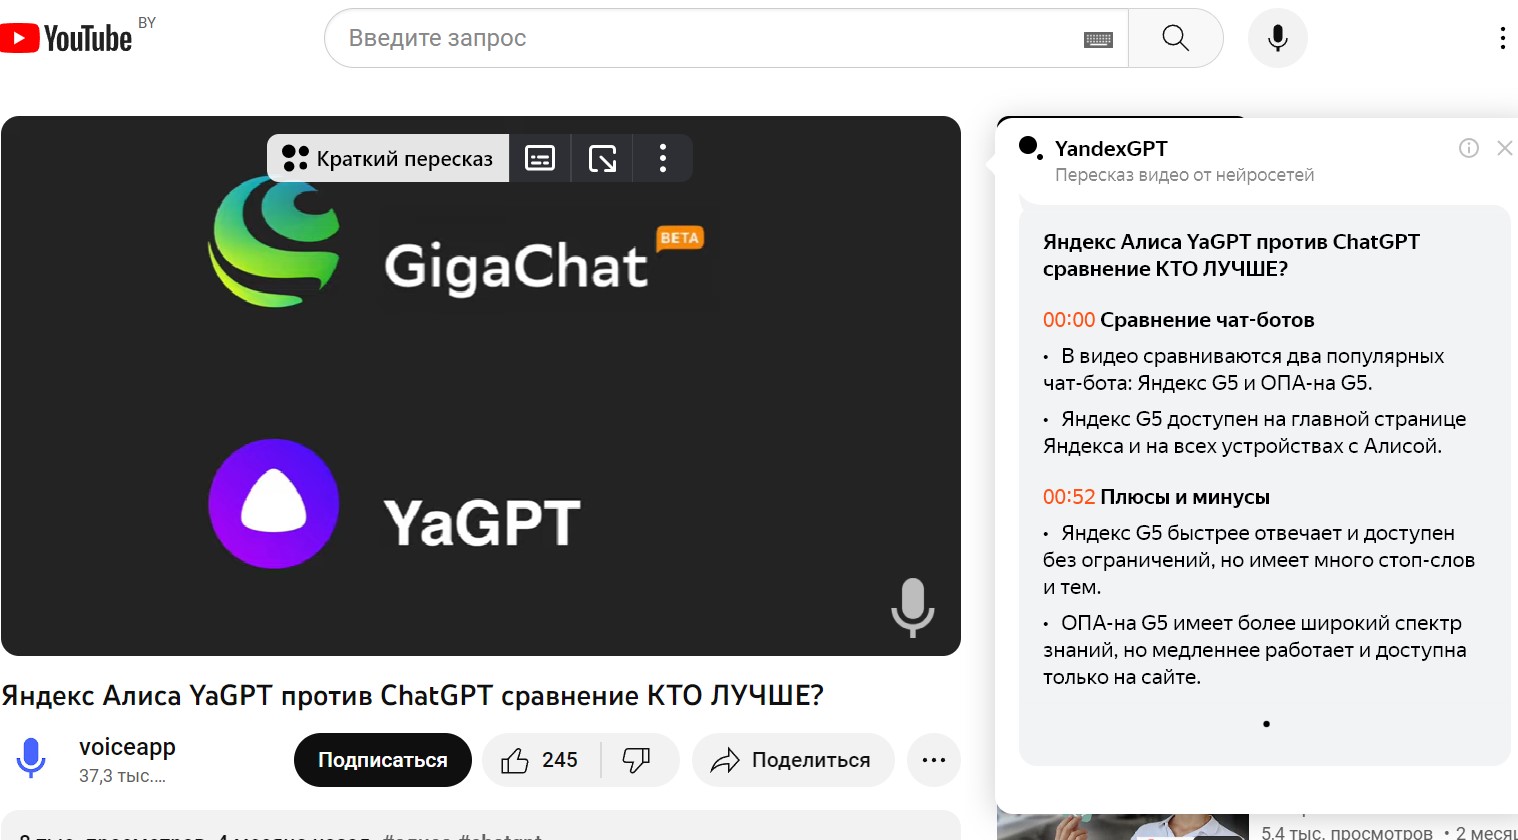 В нейросети Яндекса появился краткий пересказ видео на русском языке